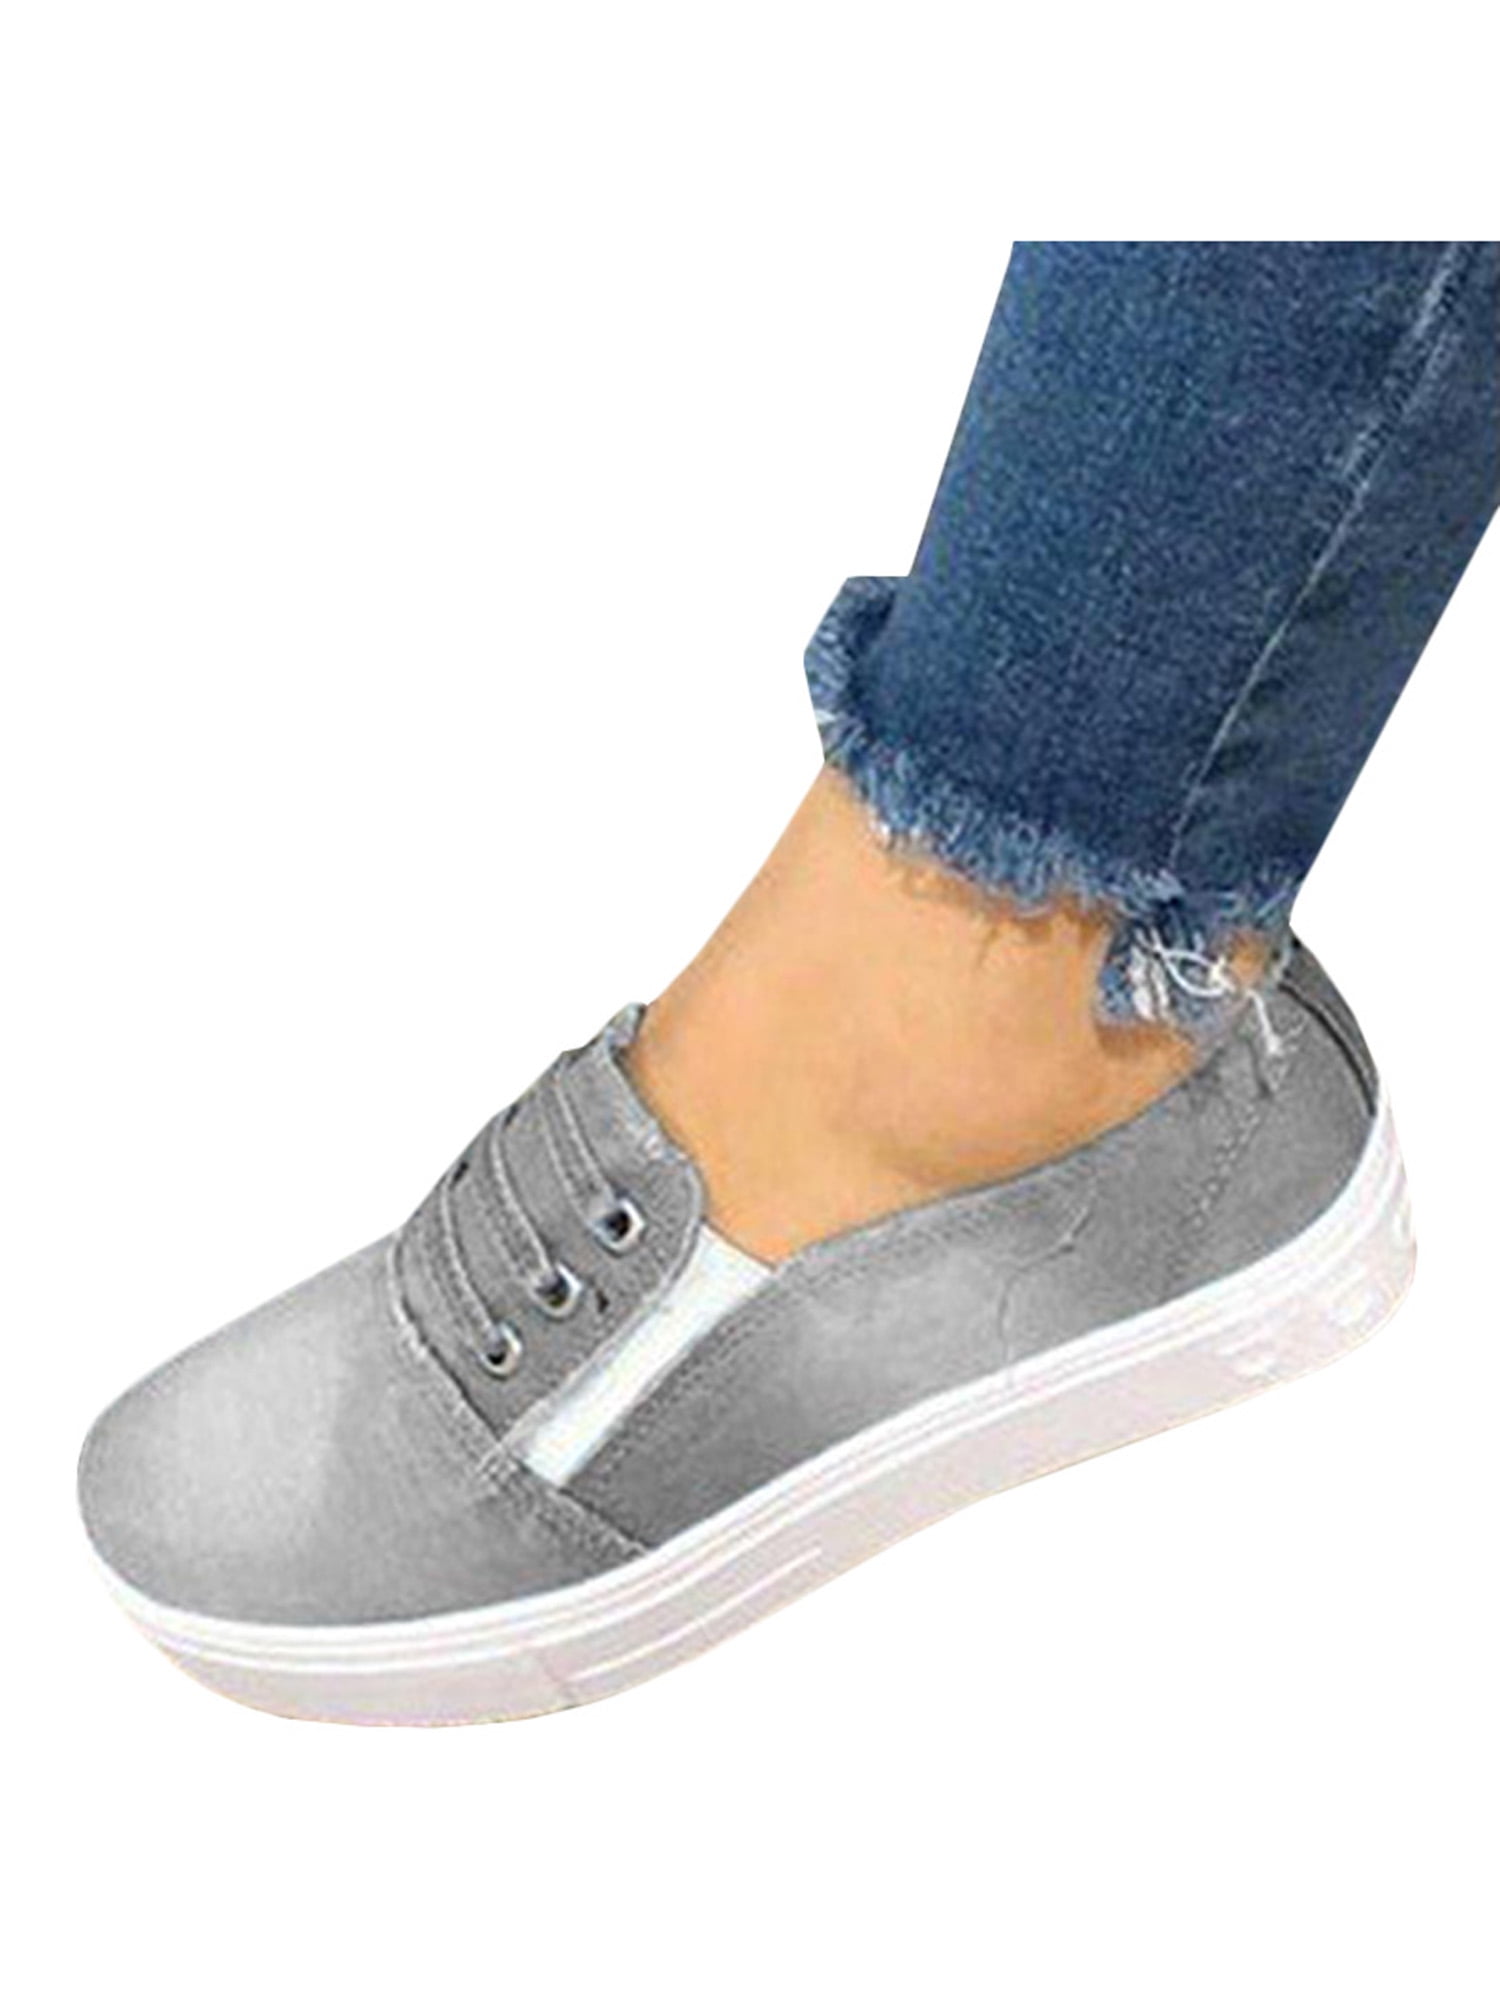 grey womens slip on sneakers